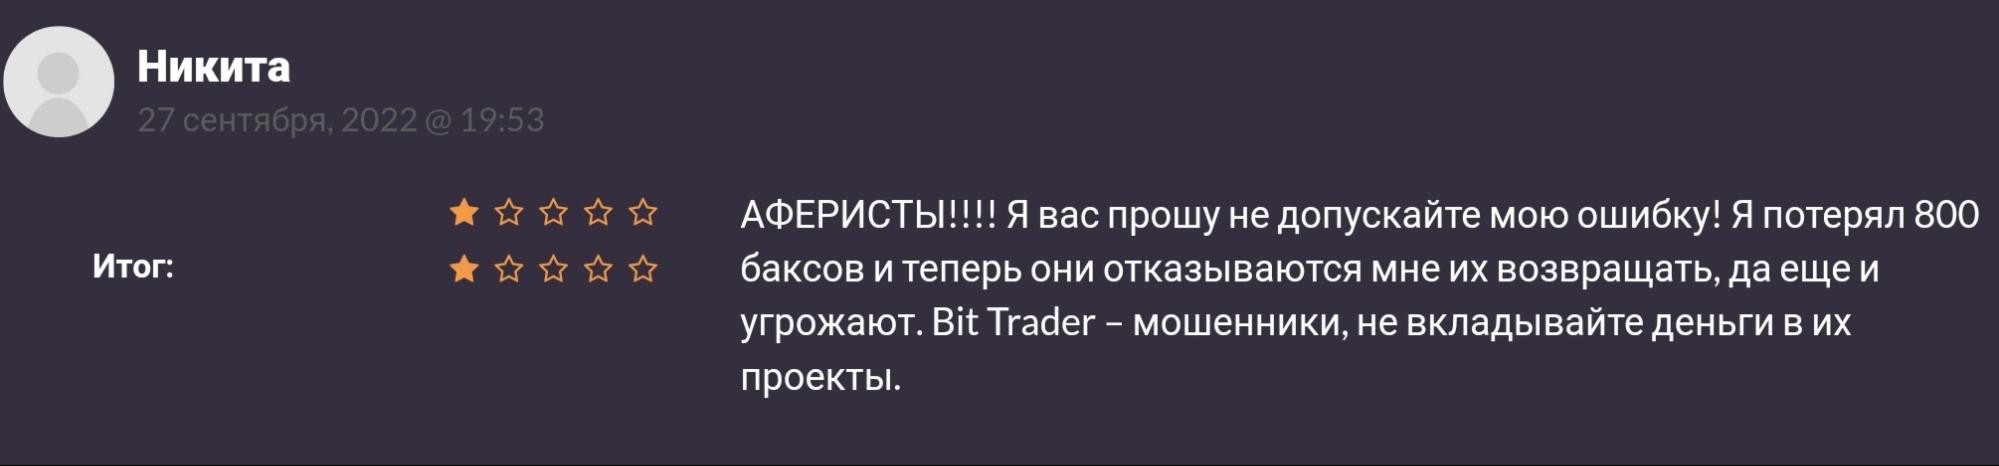 Отзывы о Bit trader